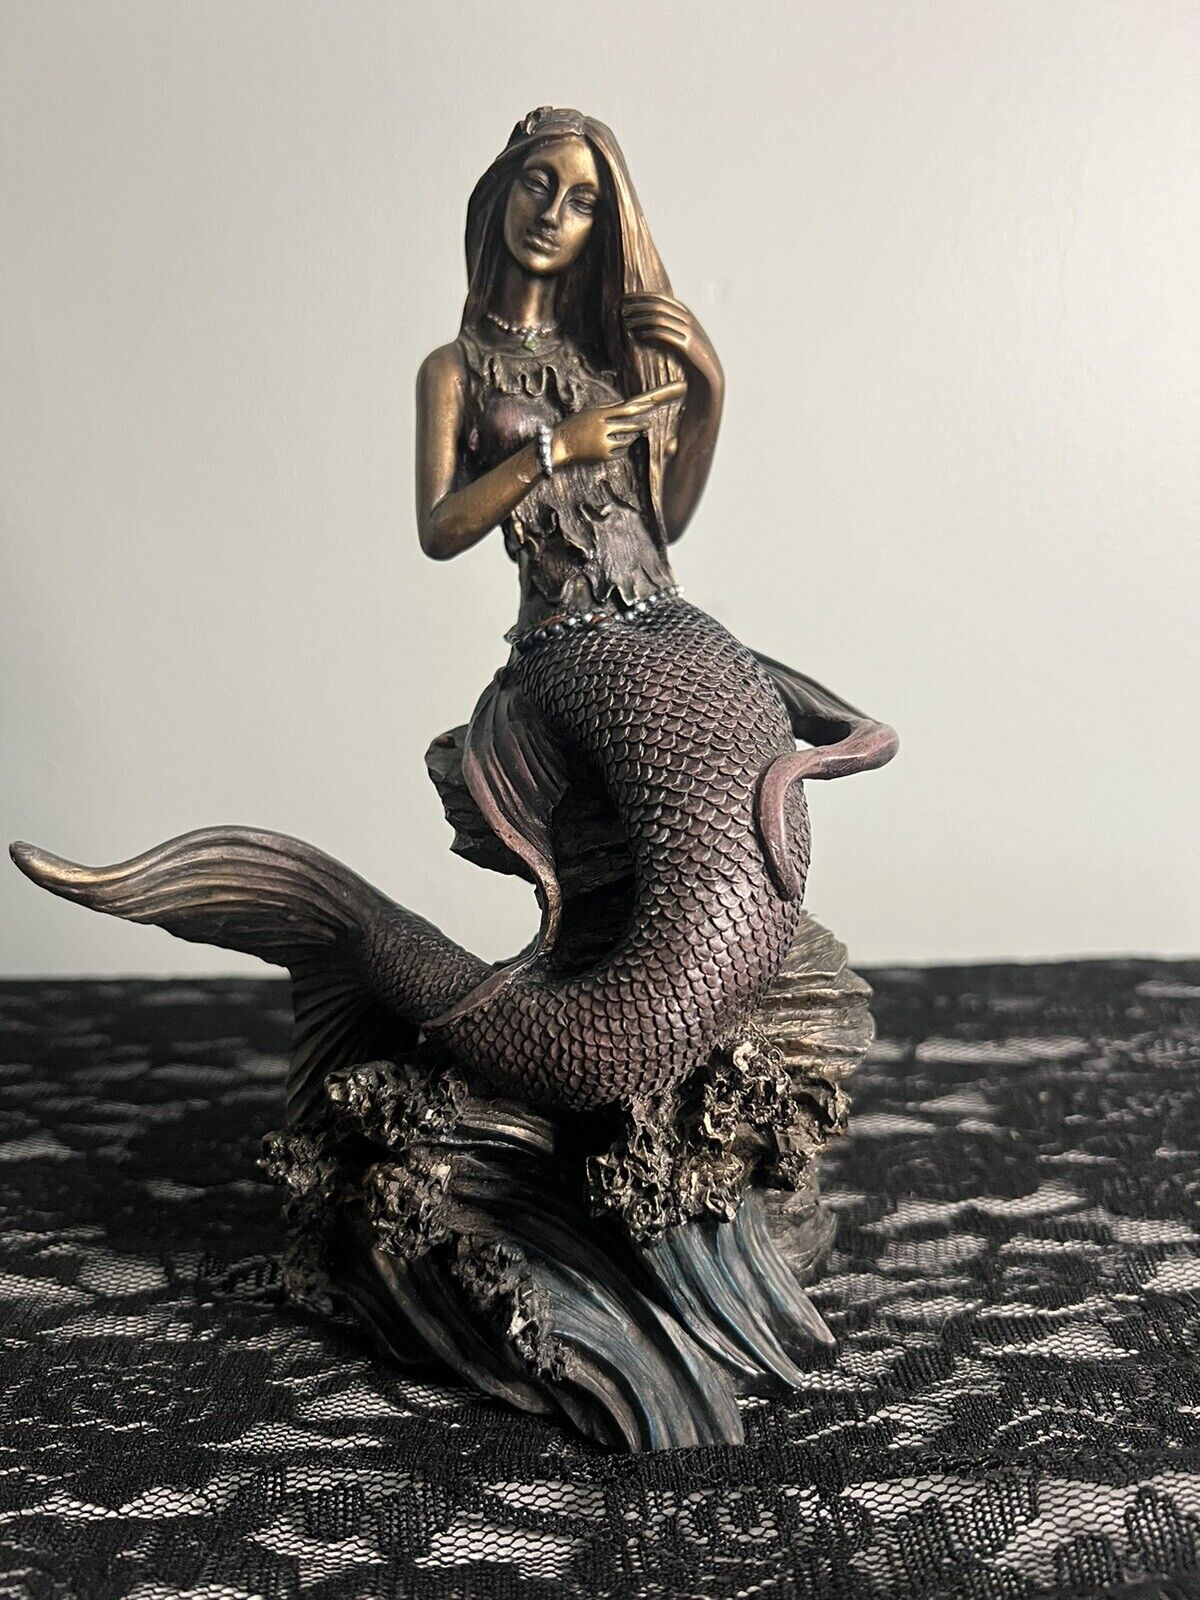 mermaid statue figurine